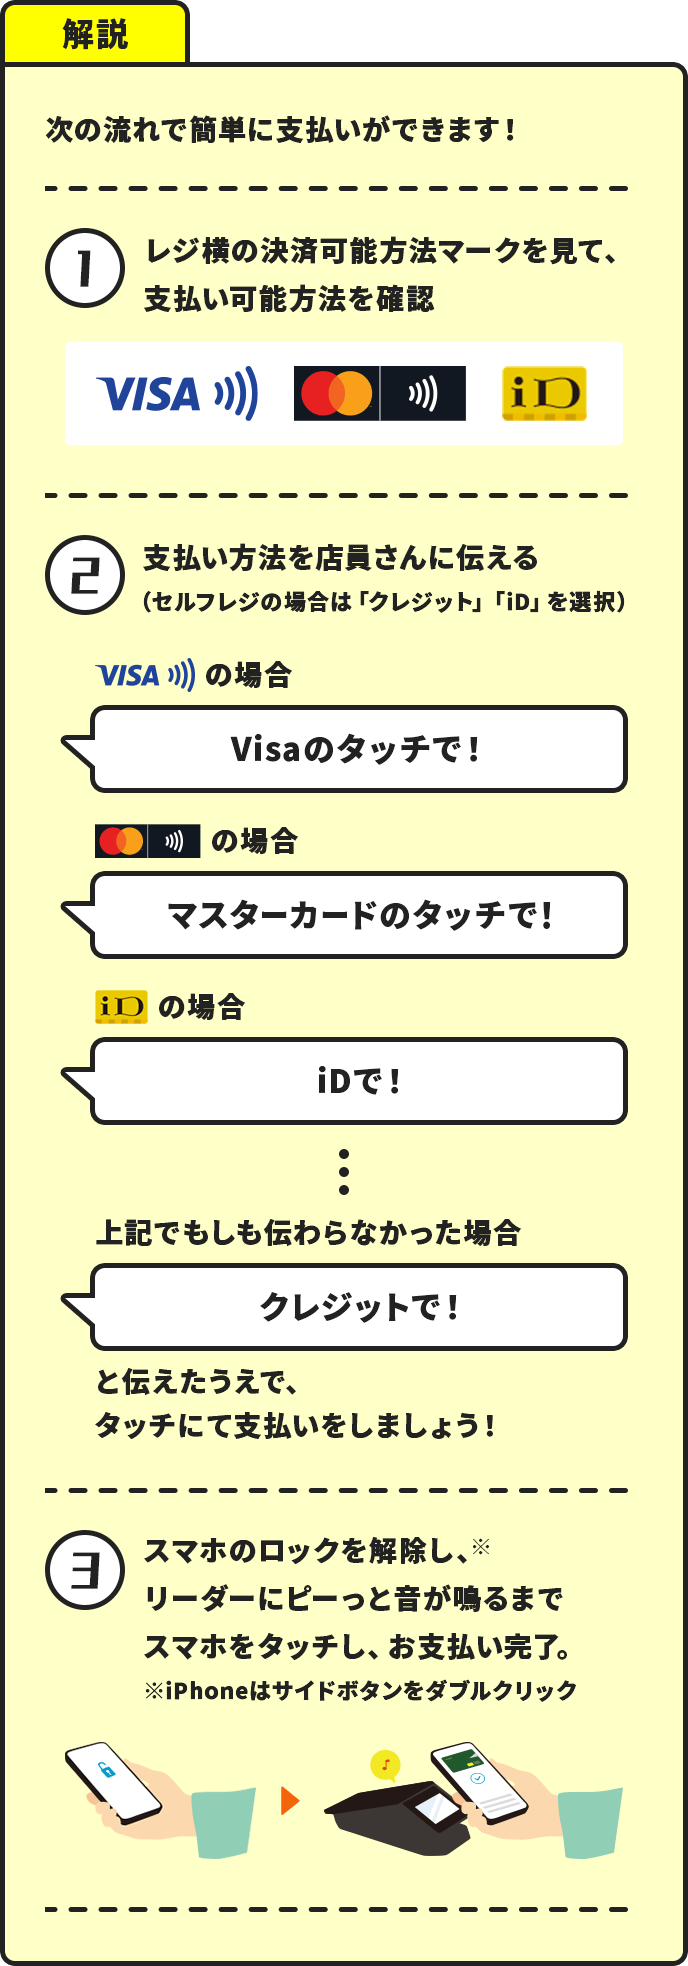 解説：次の流れで簡単に支払いができます！ ①レジ横の決済可能方法マークを見て、支払い可能方法を確認　②支払い方法を店員さんに伝える（セルフレジの場合は「クレジット」「iD」を選択） Visaの場合「Visaのタッチで！」 マスターカードの場合「マスターカードのタッチで！」 iDの場合「iDで！」 …上記でもしも伝わらなかった場合：「クレジットで！」と伝えたうえで、タッチにて支払いをしましょう！　③スマホのロックを解除し、リーダーにピーっと音が鳴るまでスマホをタッチし、お支払い完了。※iPhoneはサイドボタンをダブルクリック